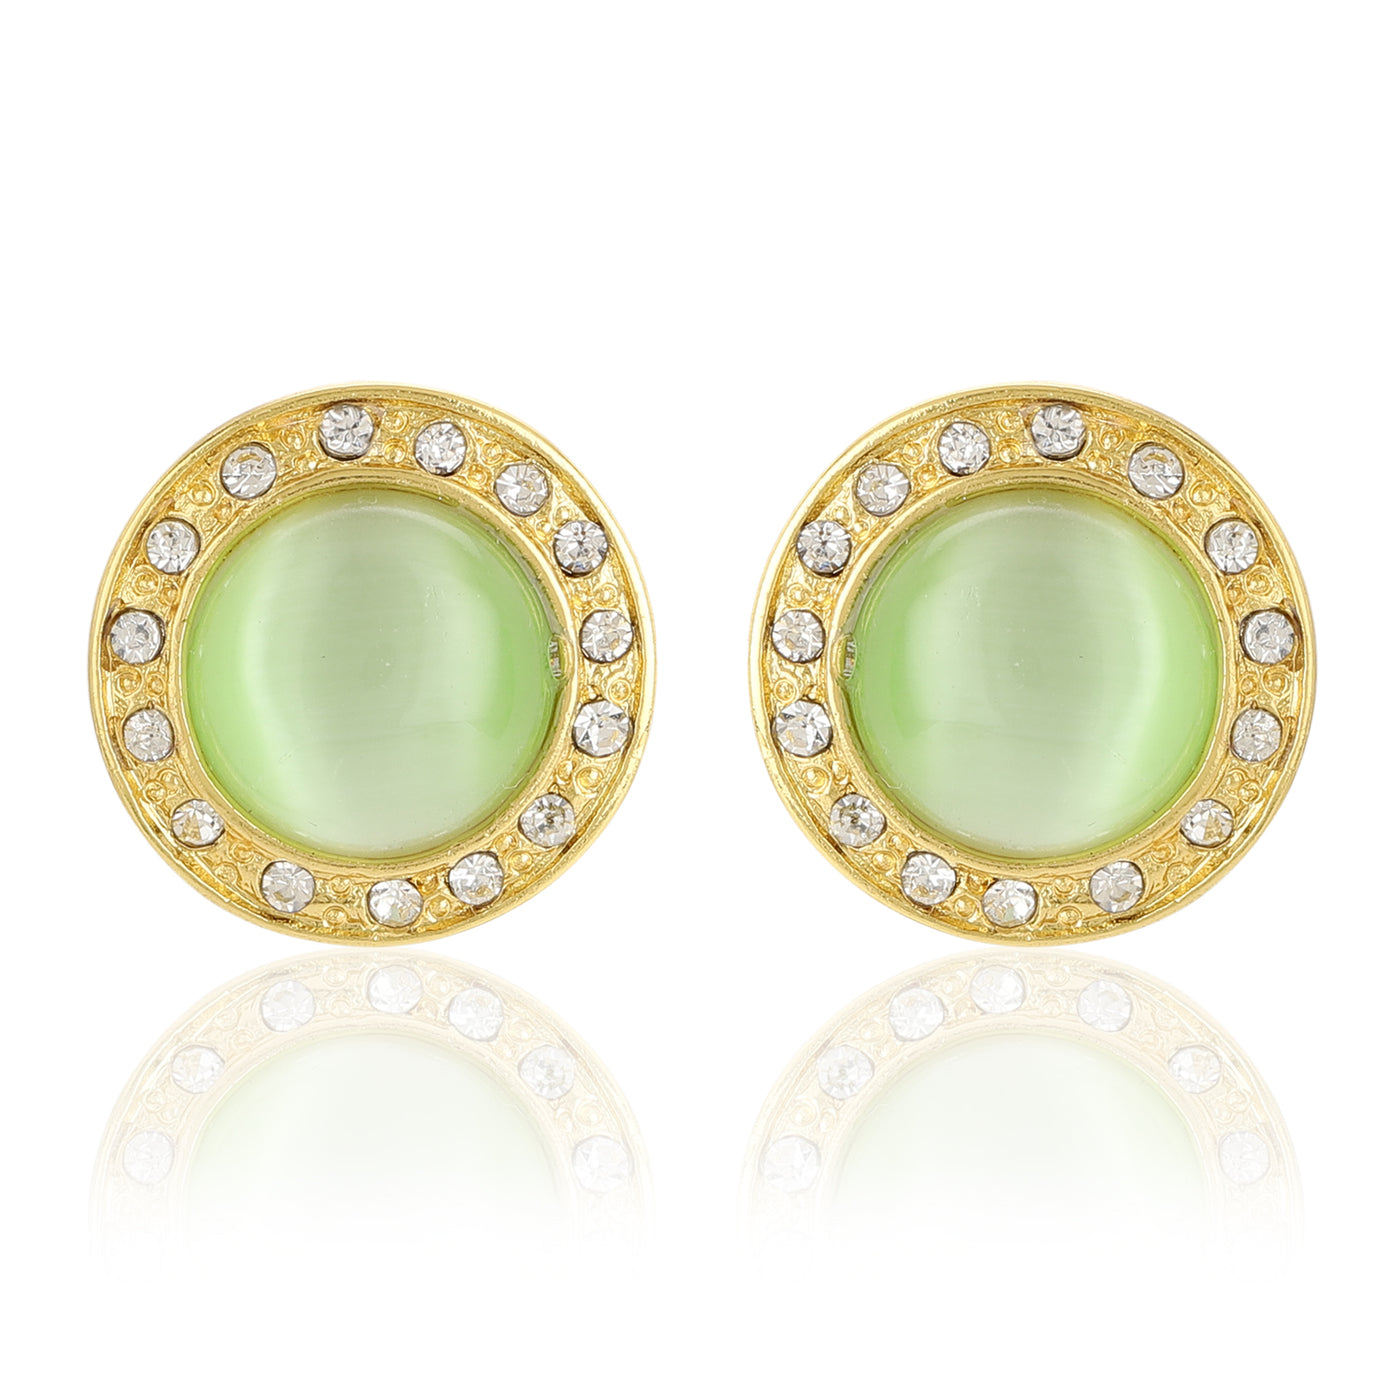 Green Enamel Round Stud Earrings